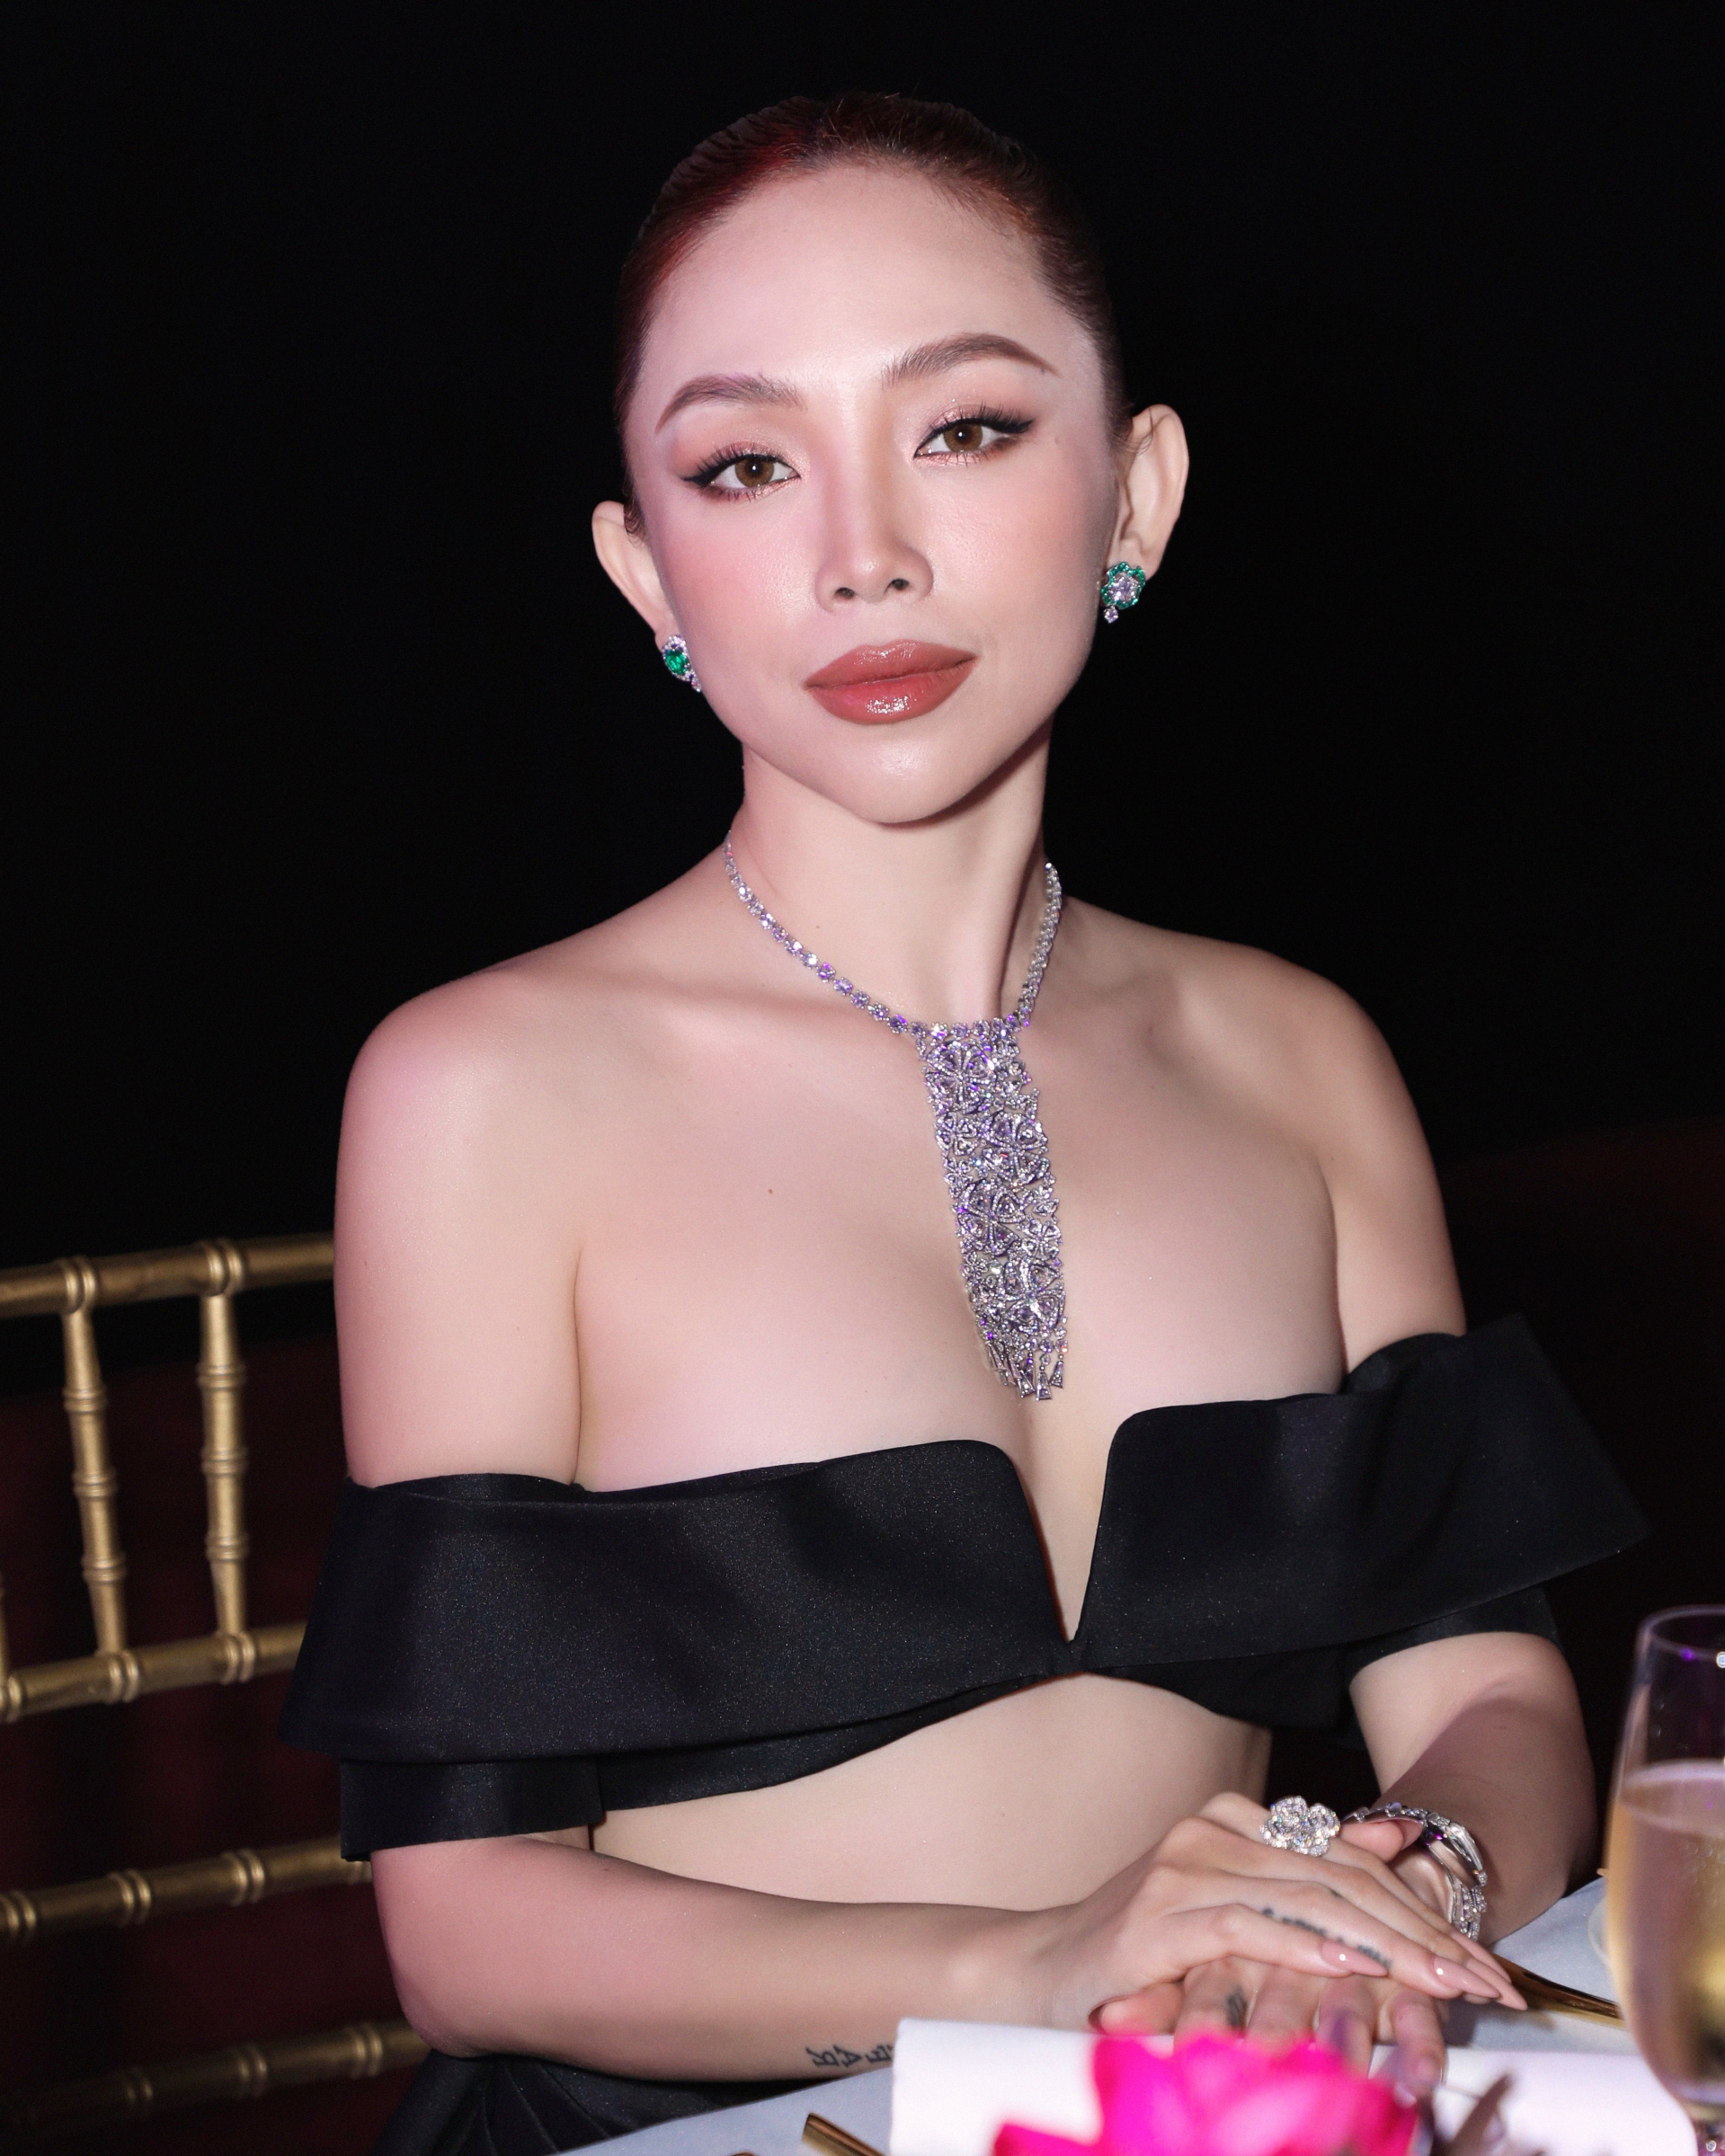 Tóc Tiên đeo trang sức 35 tỷ, diện váy cut-out nổi bật tại thảm đỏ Singapore - ảnh 3